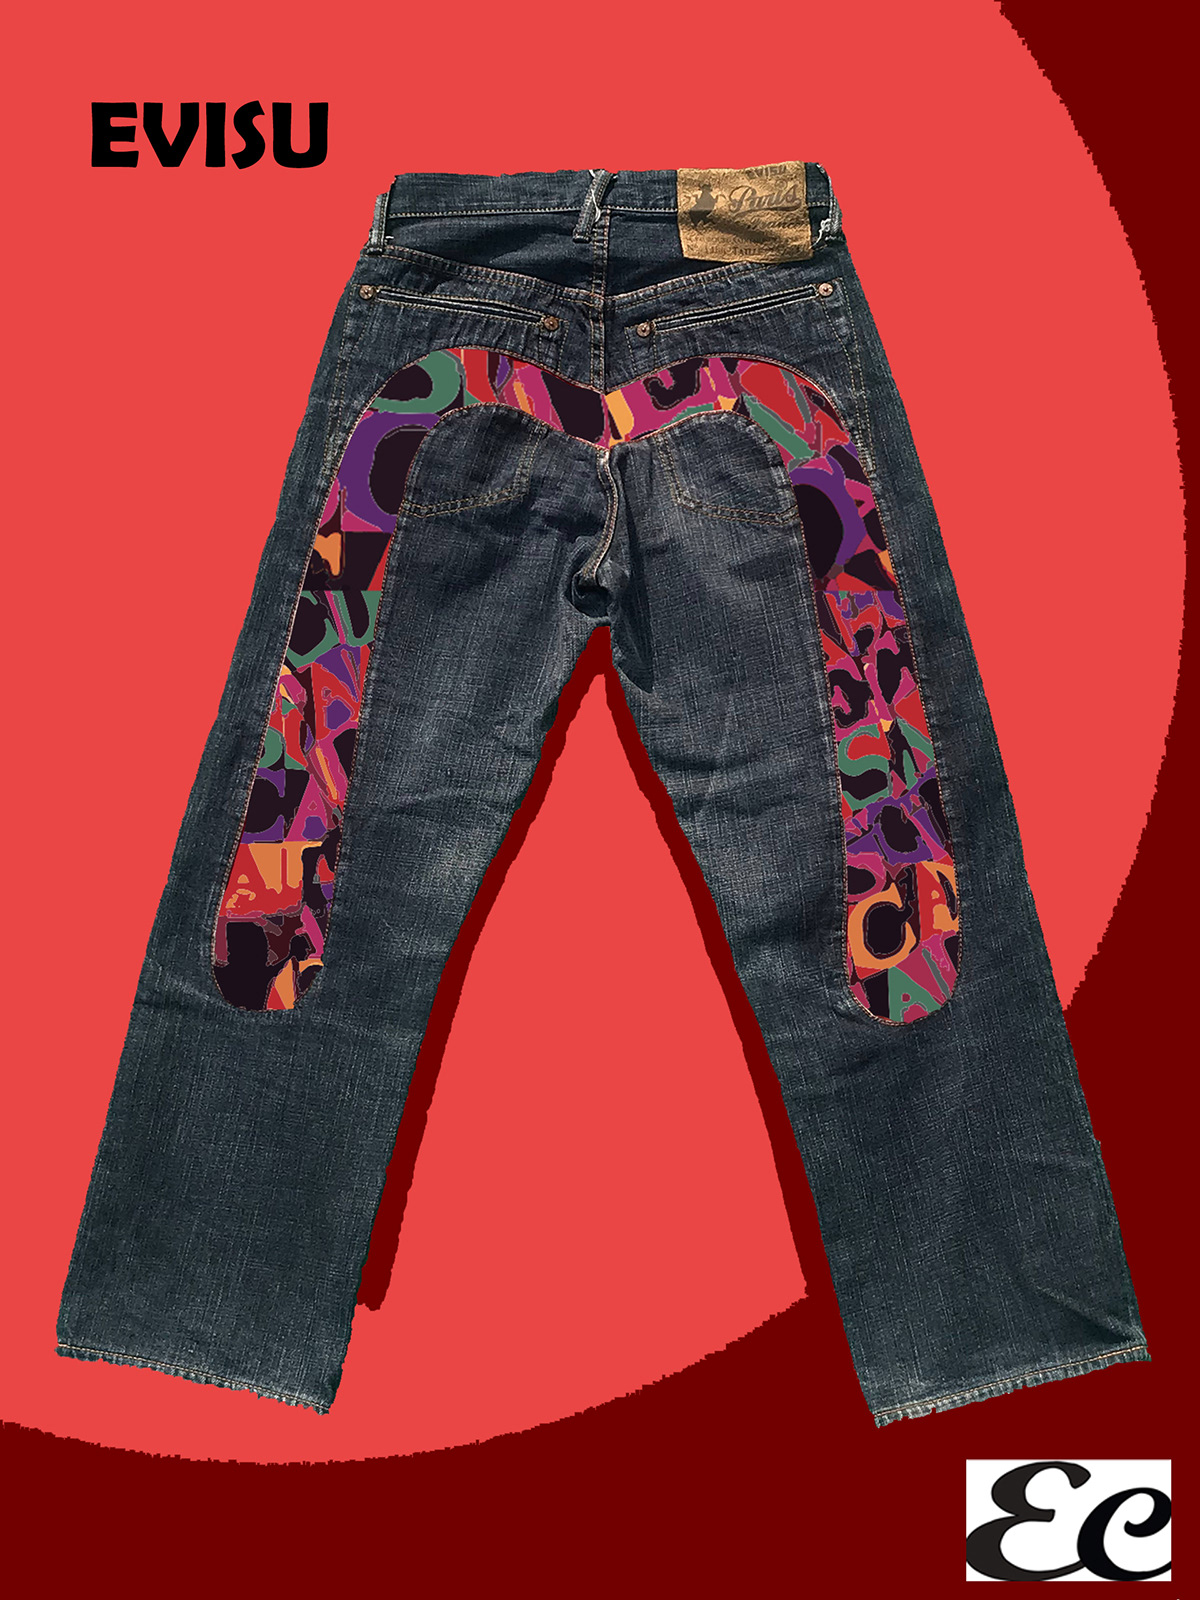 Bandana colori jeans levi's moda anni 90 pittura RIVISITAZIONE sonia terk tela texture